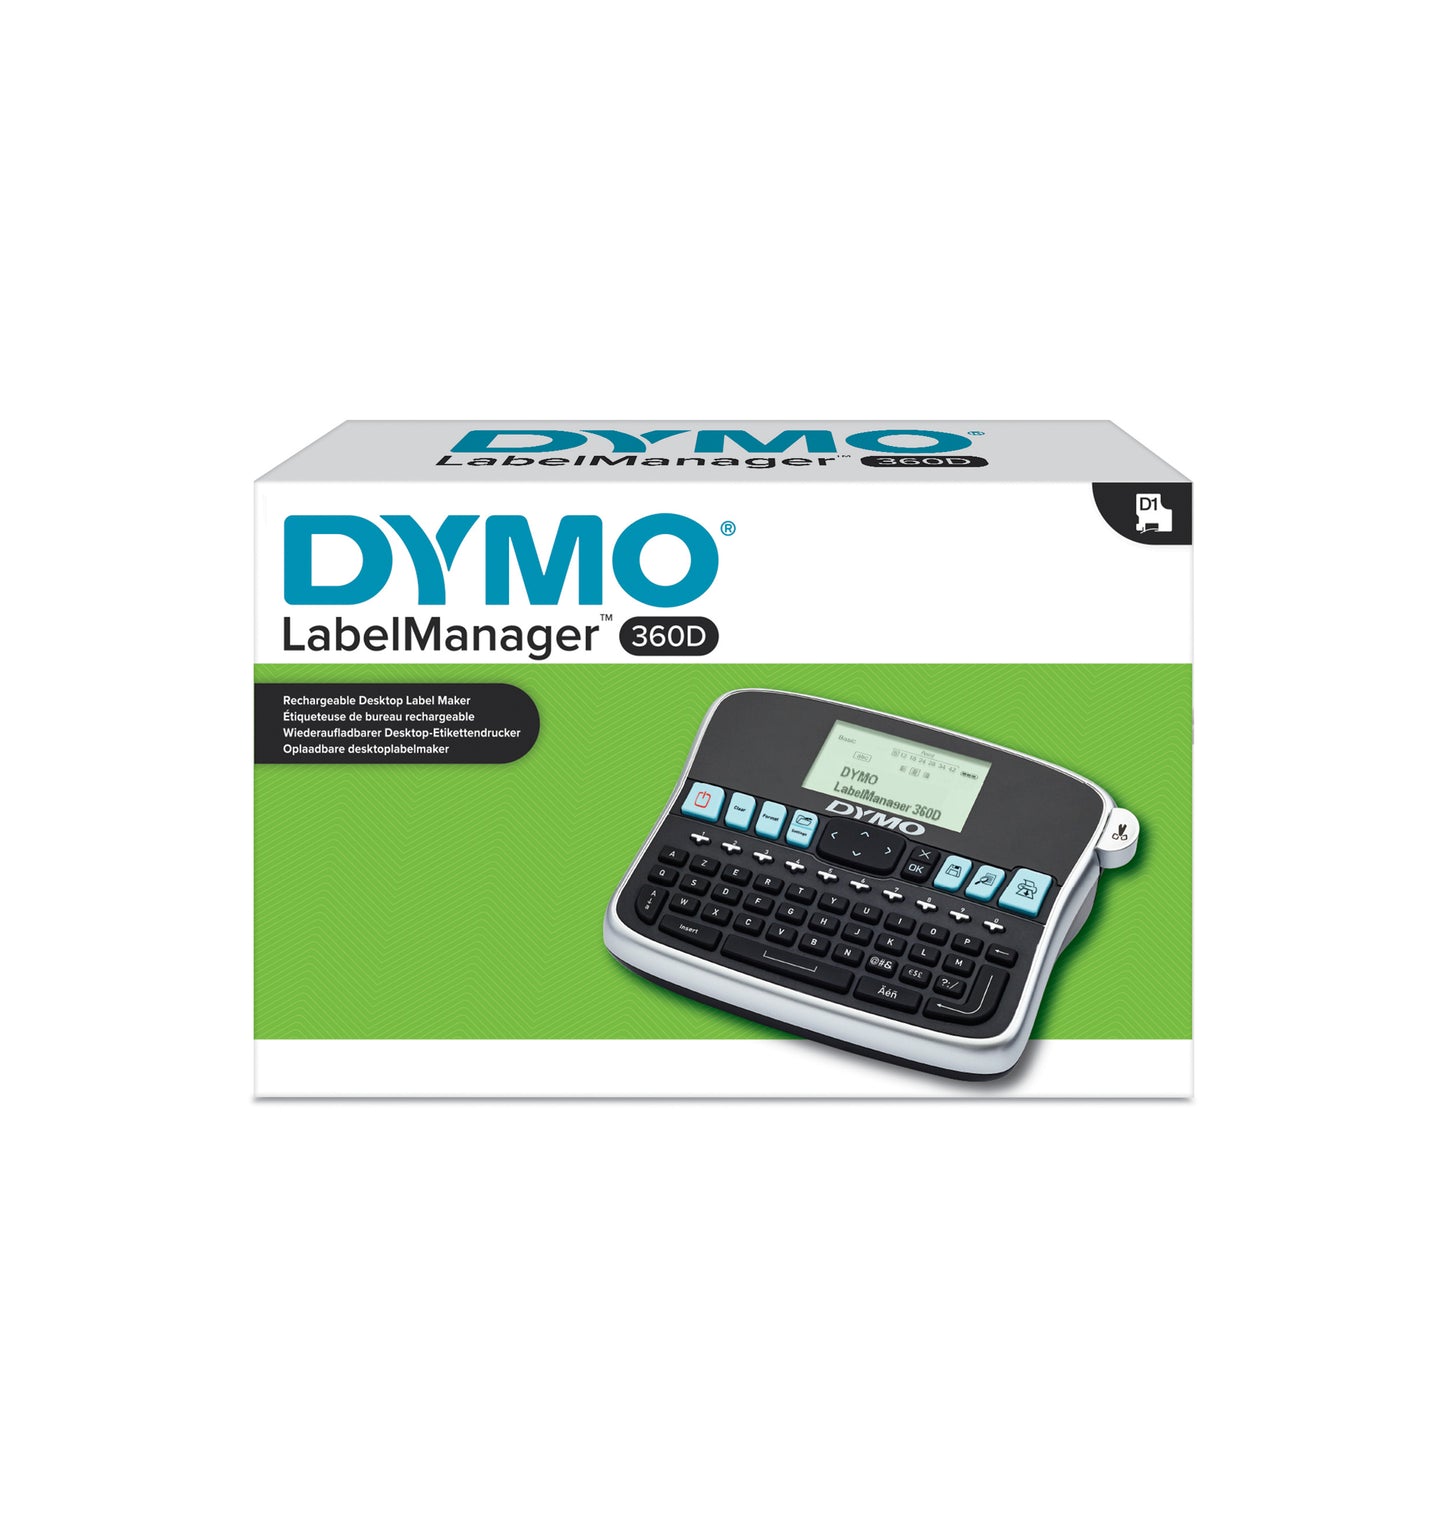 DYMO tiskalnik Labelmanager 360D QWY